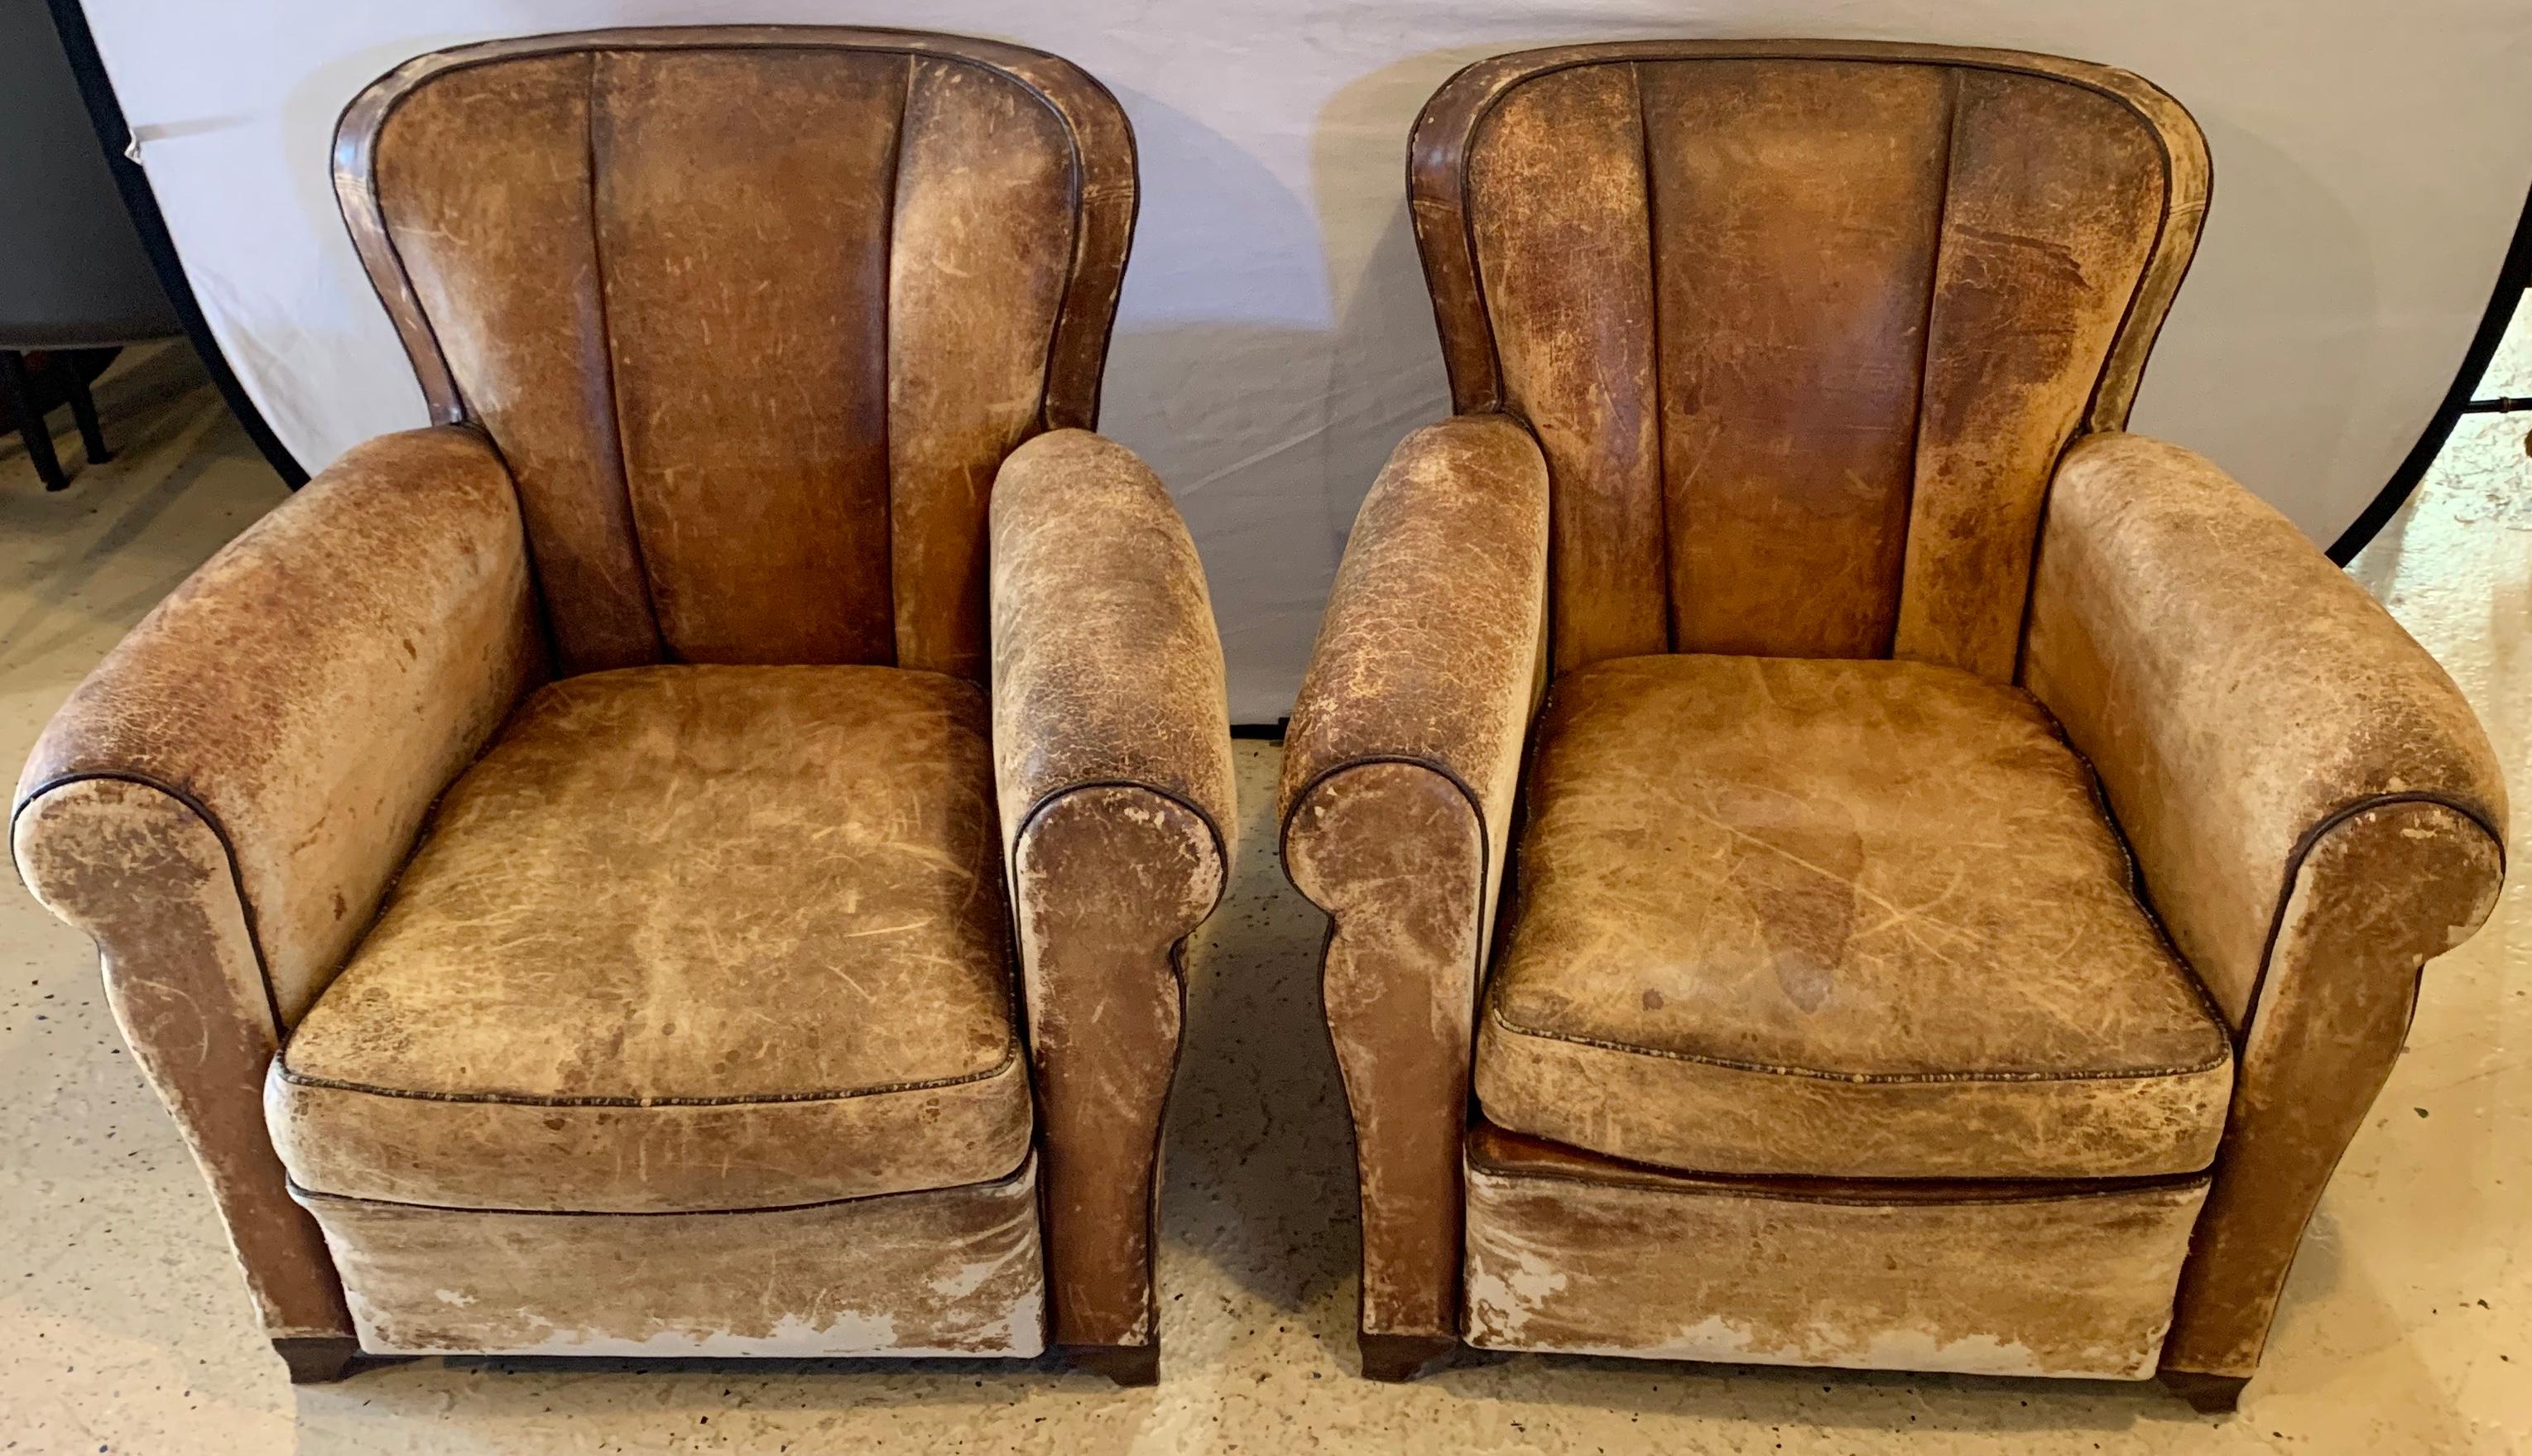 Paar Art-Déco-Loungesessel aus Leder:: ca. 1940er Jahre. Diese fein konstruierten und abgenutzten Lounge- oder Clubsessel aus Leder im Art-Déco-Stil wurden kürzlich neu verkabelt. Diese Stühle sind strukturell sehr solide. 

Greg

hxx.